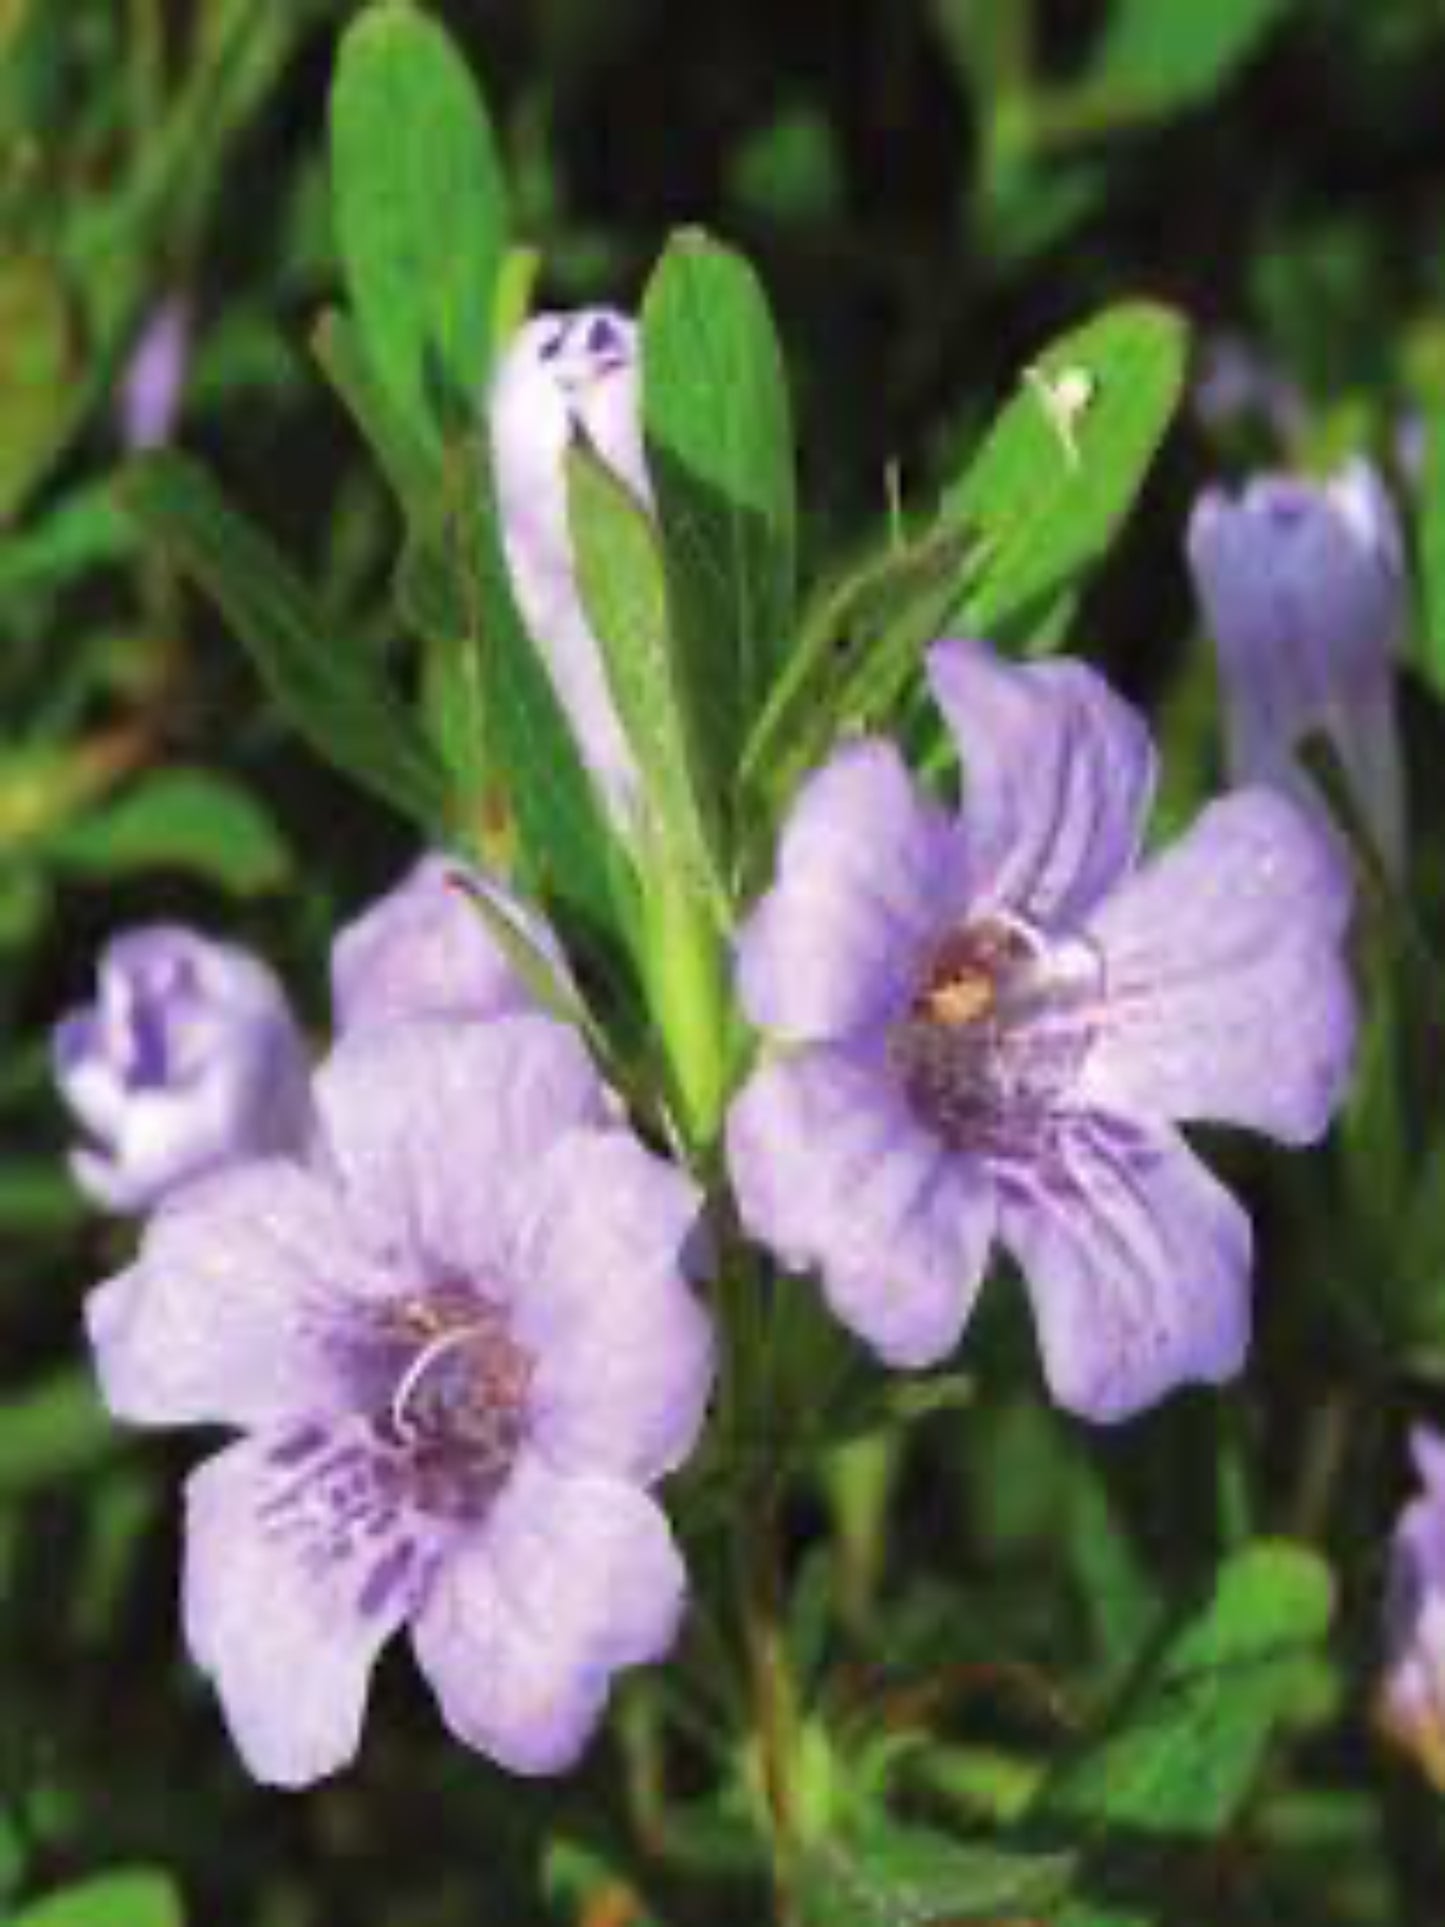 Dyschoriste oblongifolia " twinflower" is the host plant for the buckeye butterfly